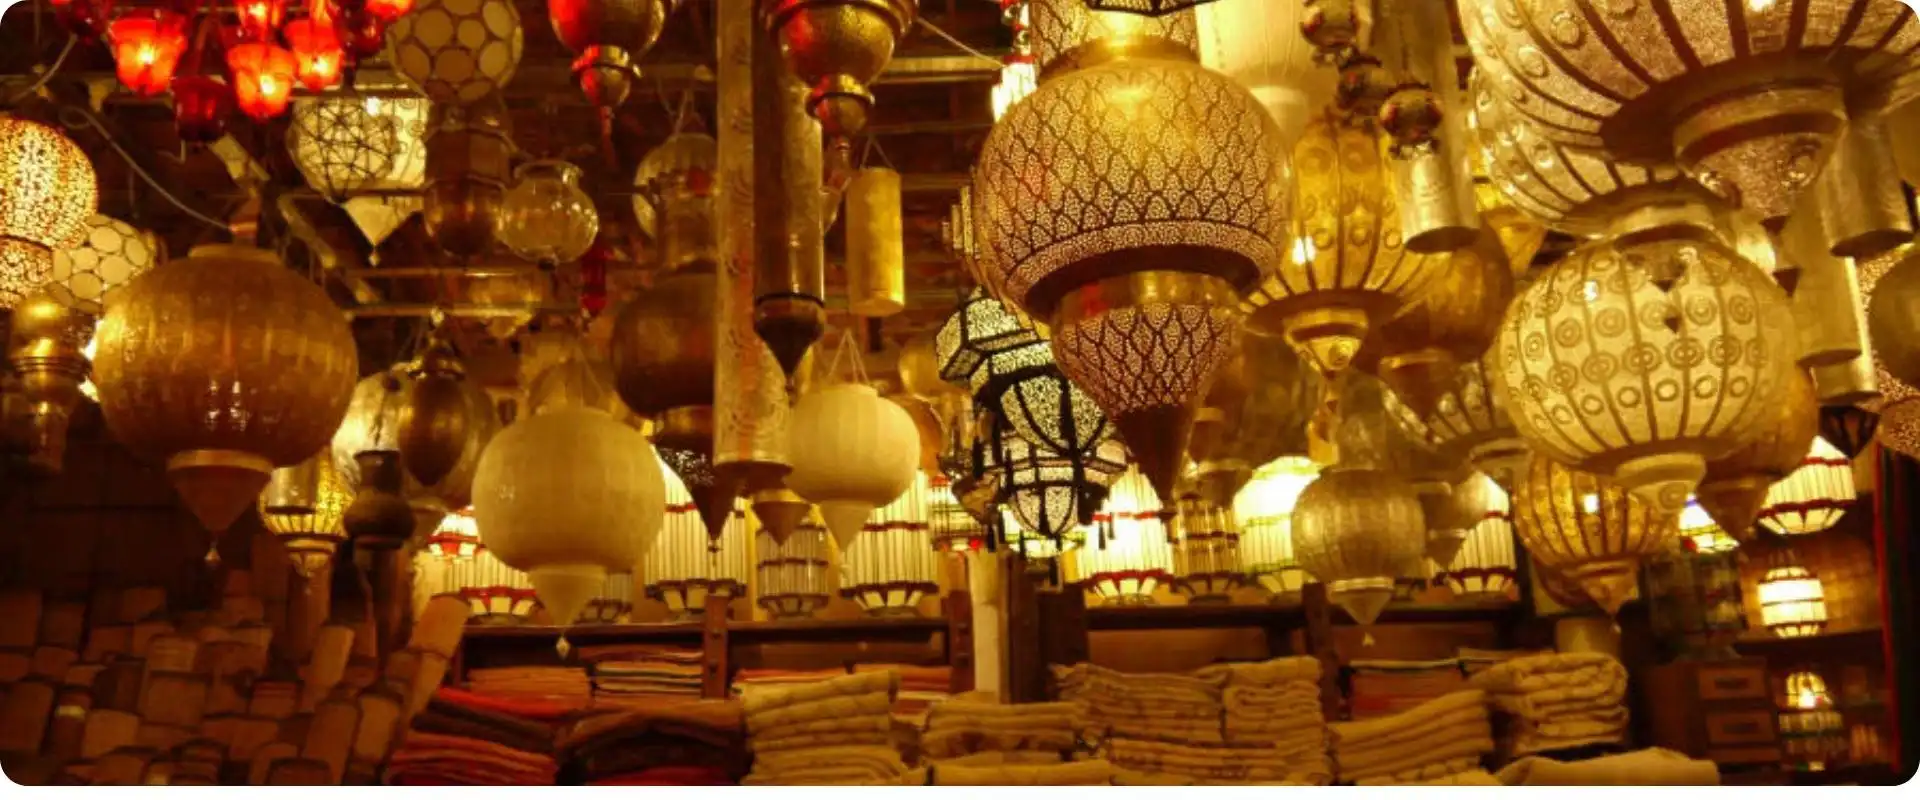 markede i marrakech marokko charterrejse fra hamborg.webp